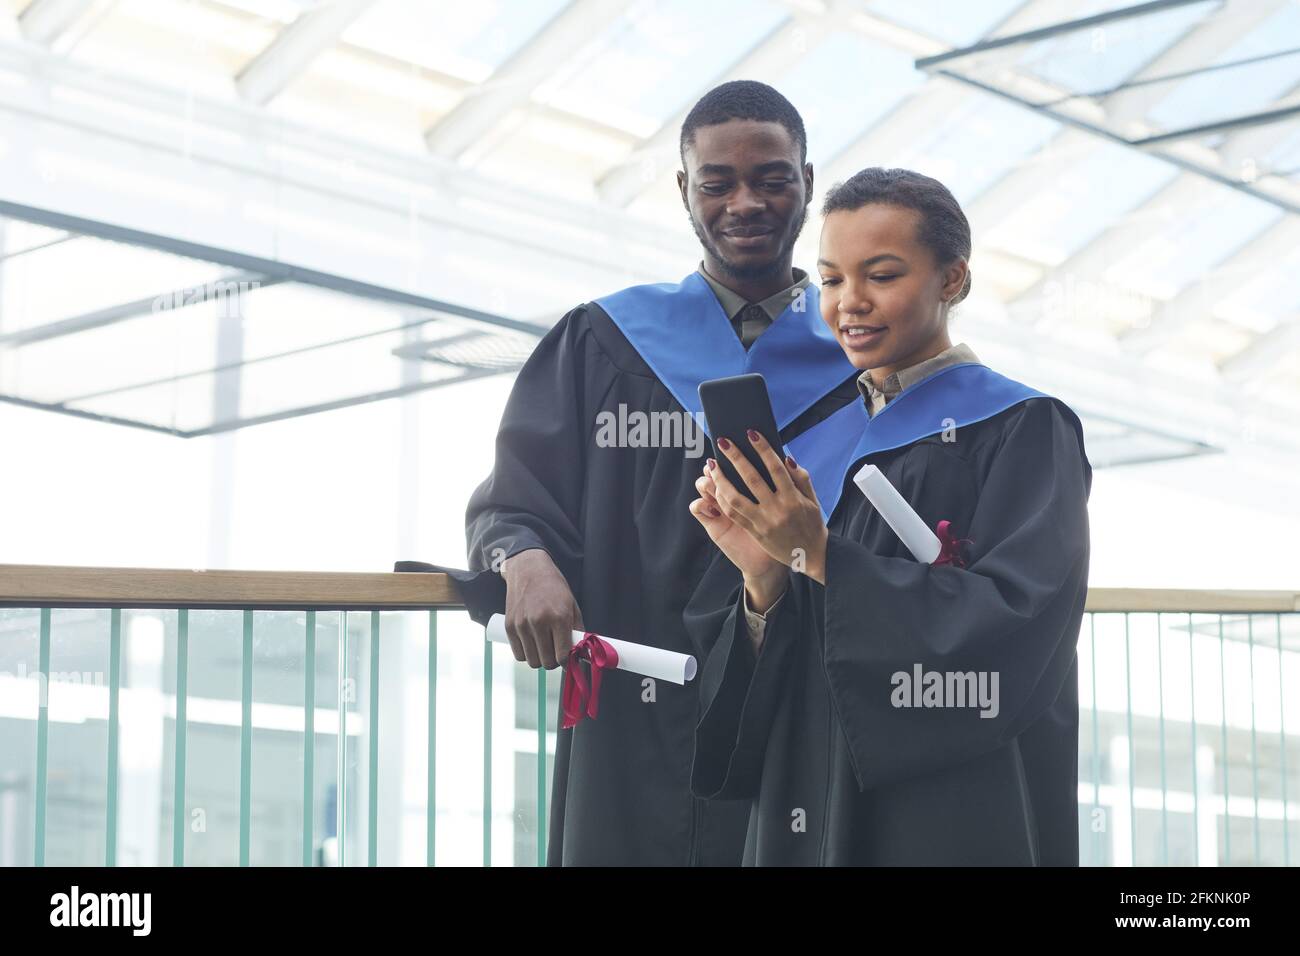 Waist-up-Porträt eines jungen afroamerikanischen Paares mit Abschlusskleidern, während es in einem modernen Universitätsinnenraum Selfie macht Stockfoto